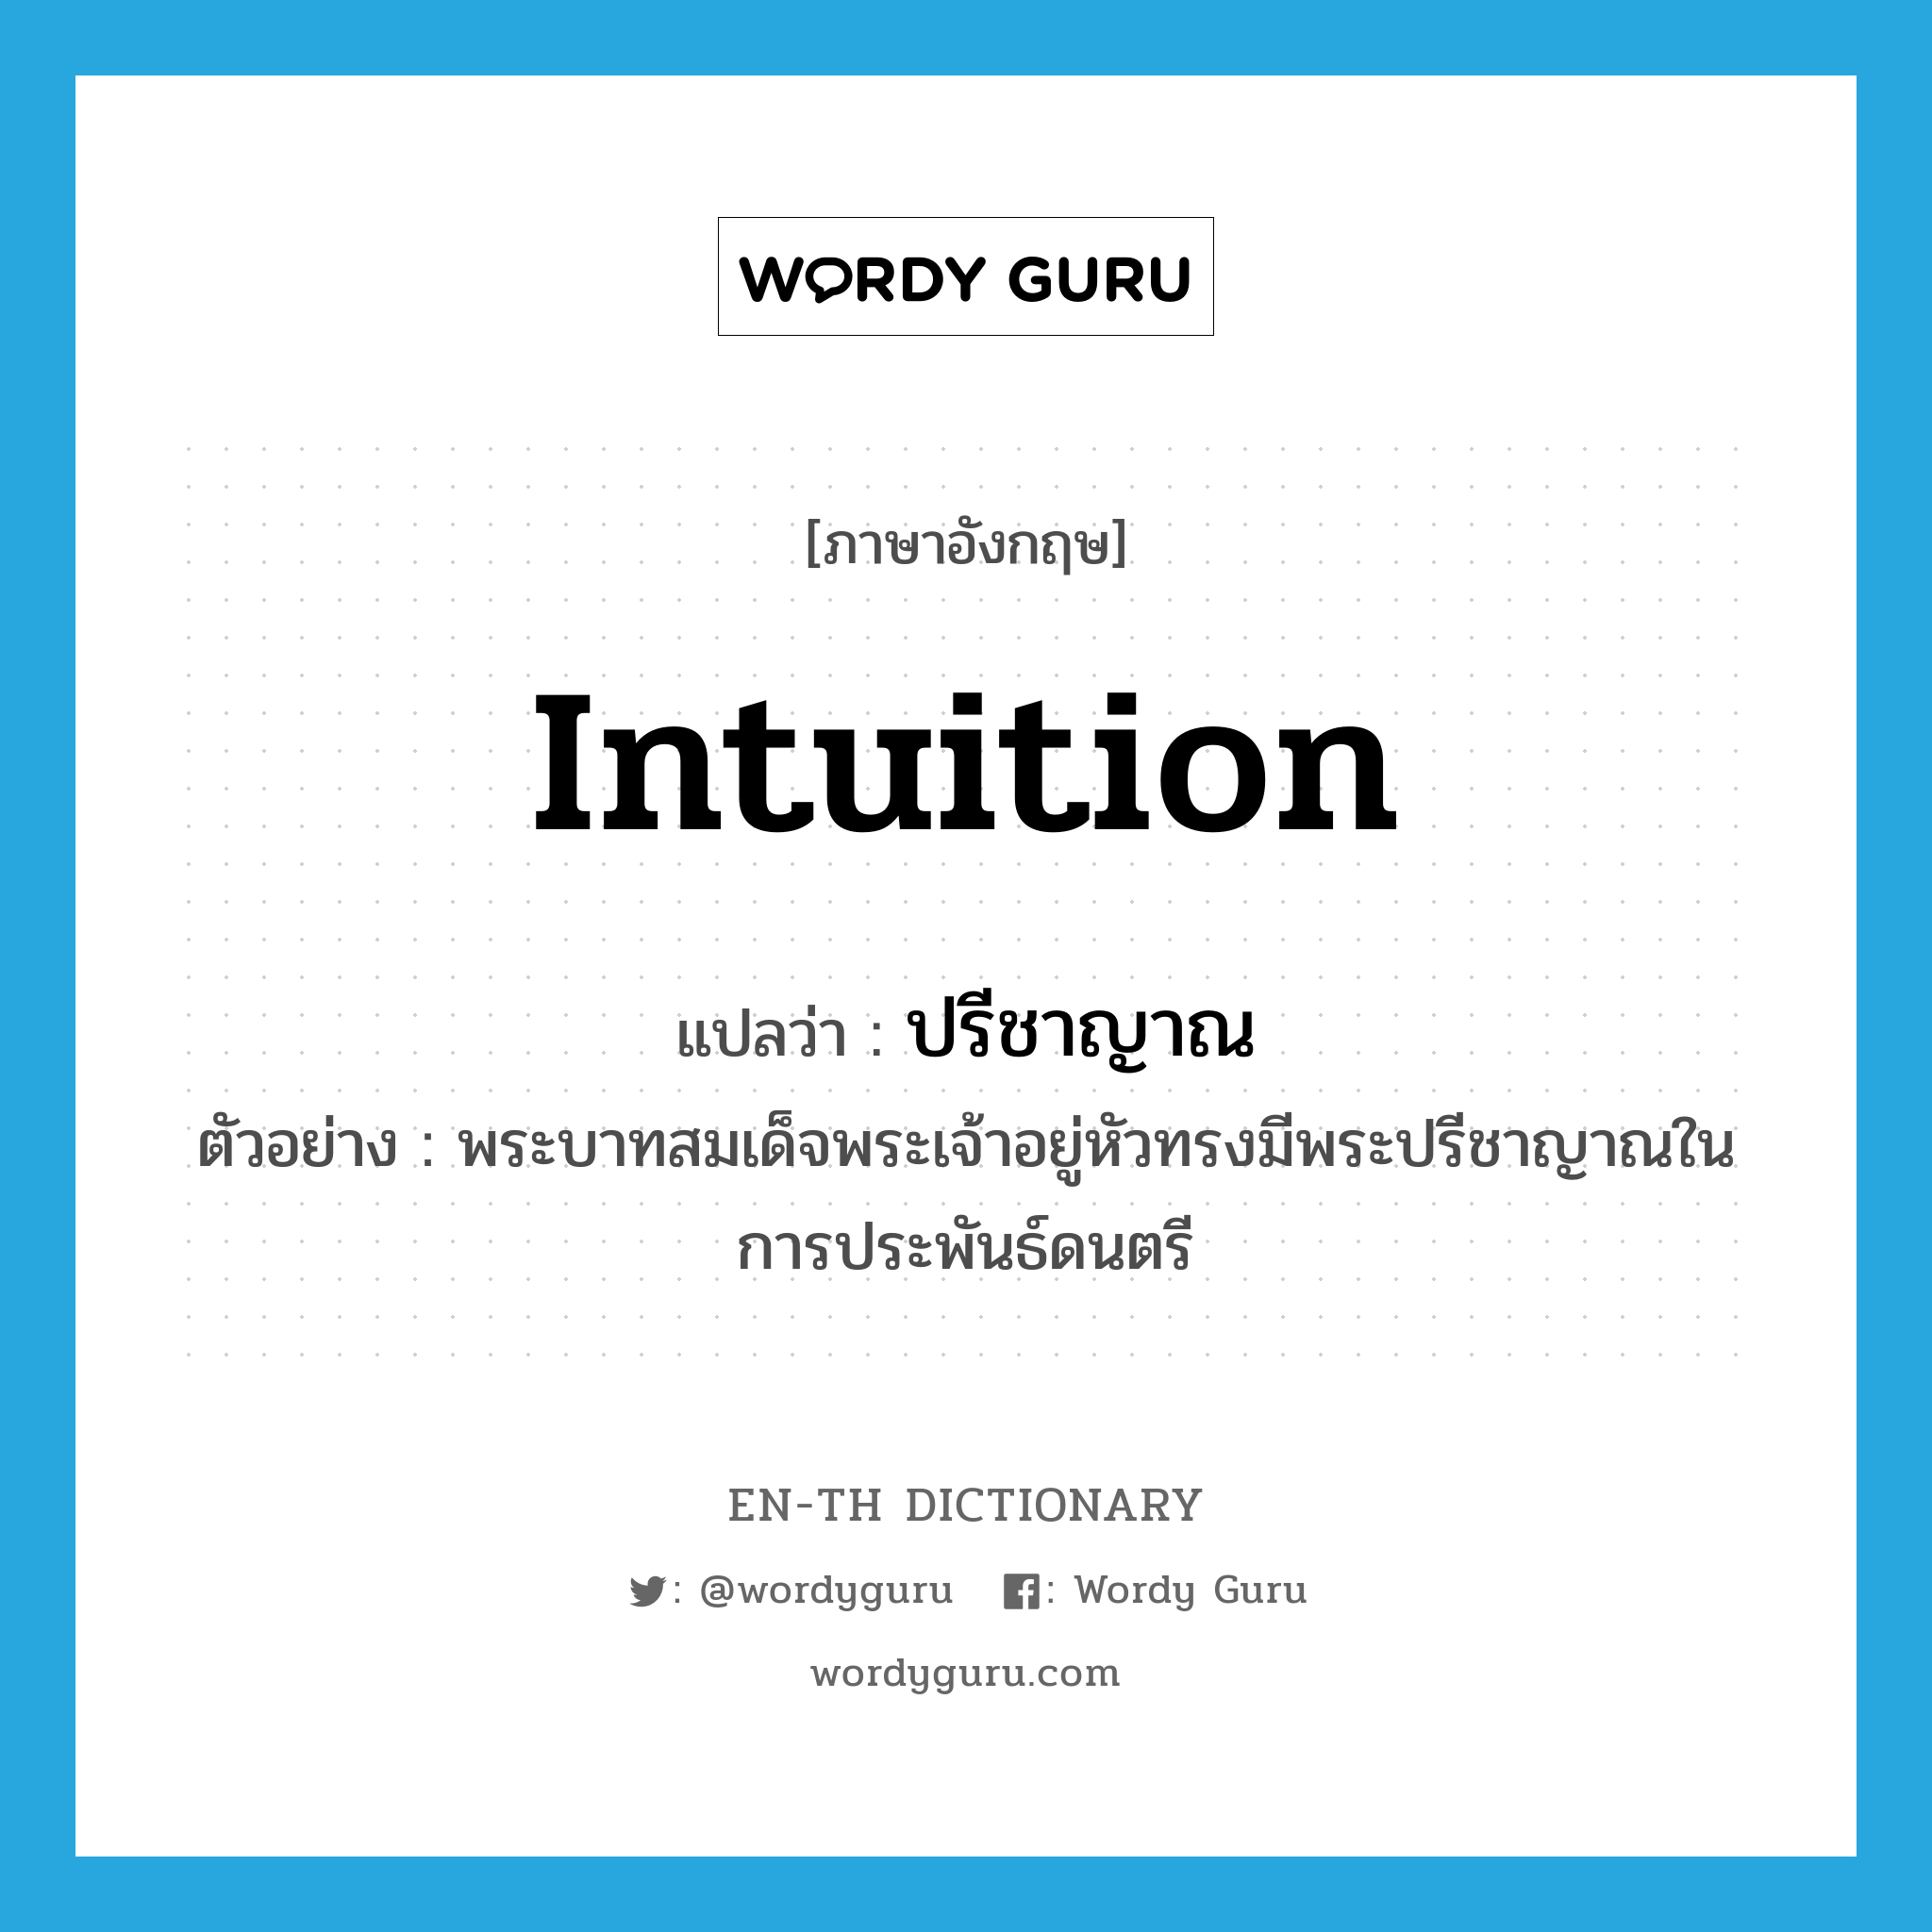 intuition แปลว่า?, คำศัพท์ภาษาอังกฤษ intuition แปลว่า ปรีชาญาณ ประเภท N ตัวอย่าง พระบาทสมเด็จพระเจ้าอยู่หัวทรงมีพระปรีชาญาณในการประพันธ์ดนตรี หมวด N